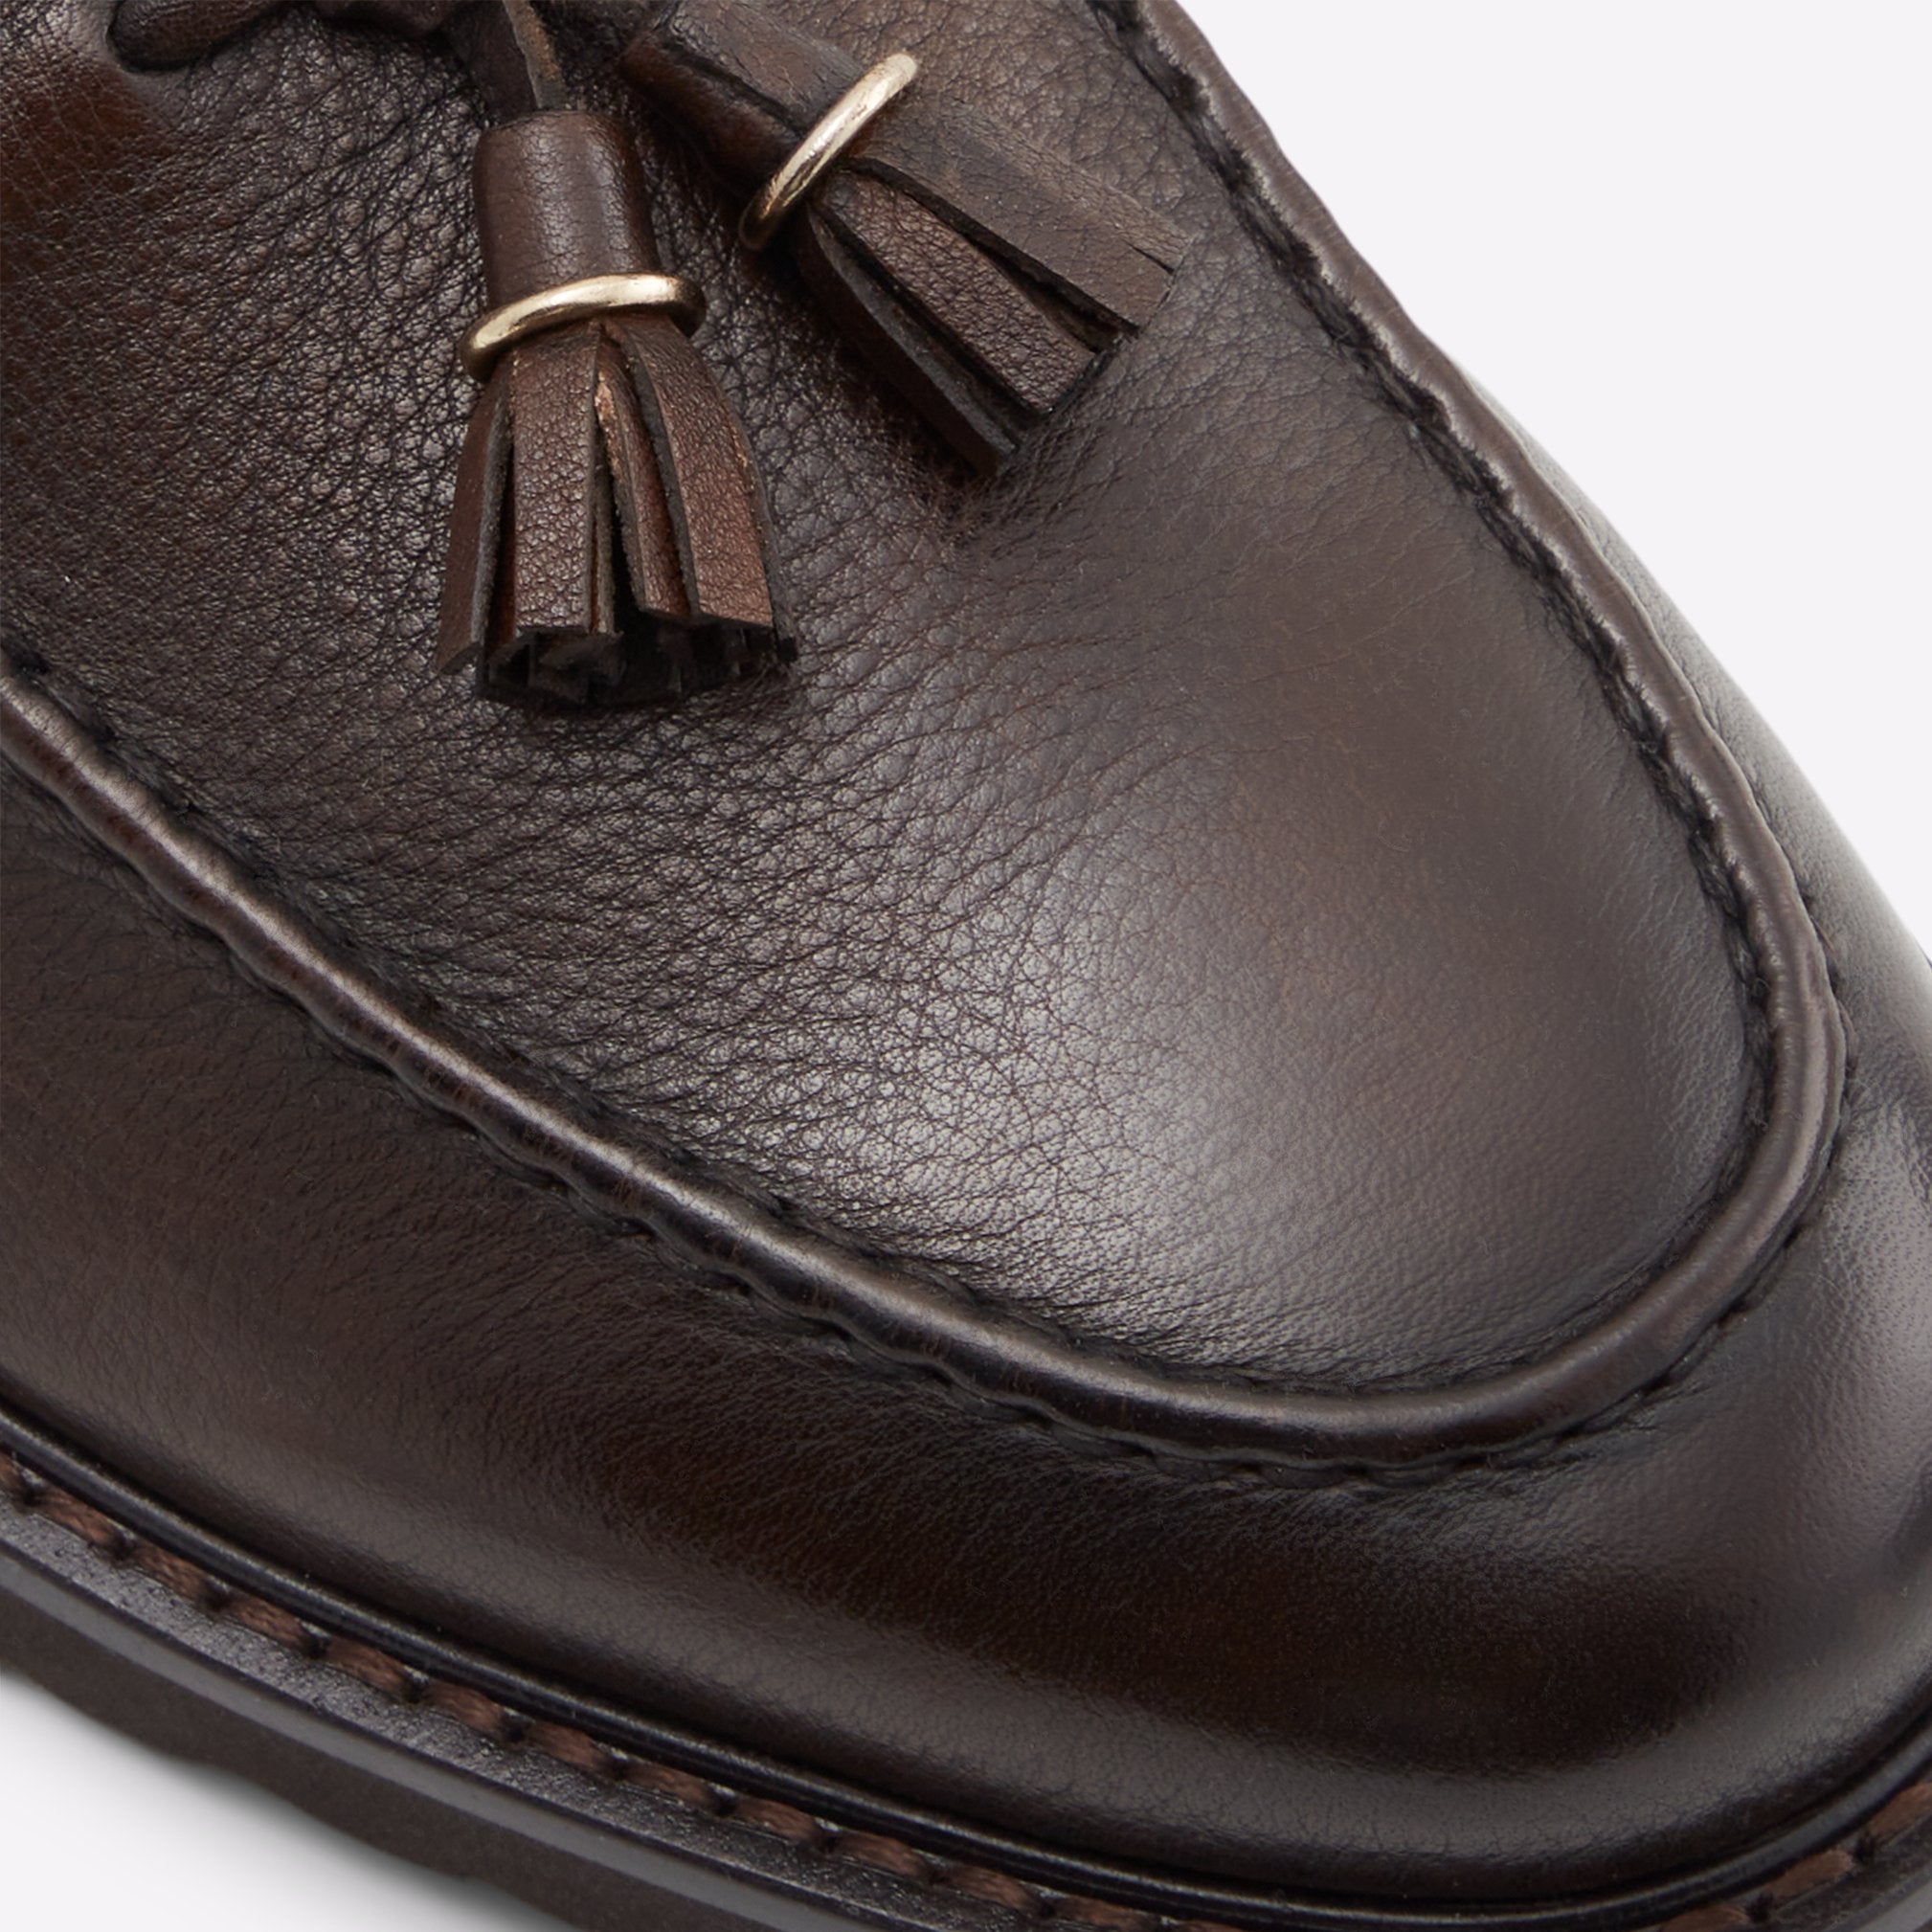 Neeson Men Shoes - Dark Brown - ALDO KSA